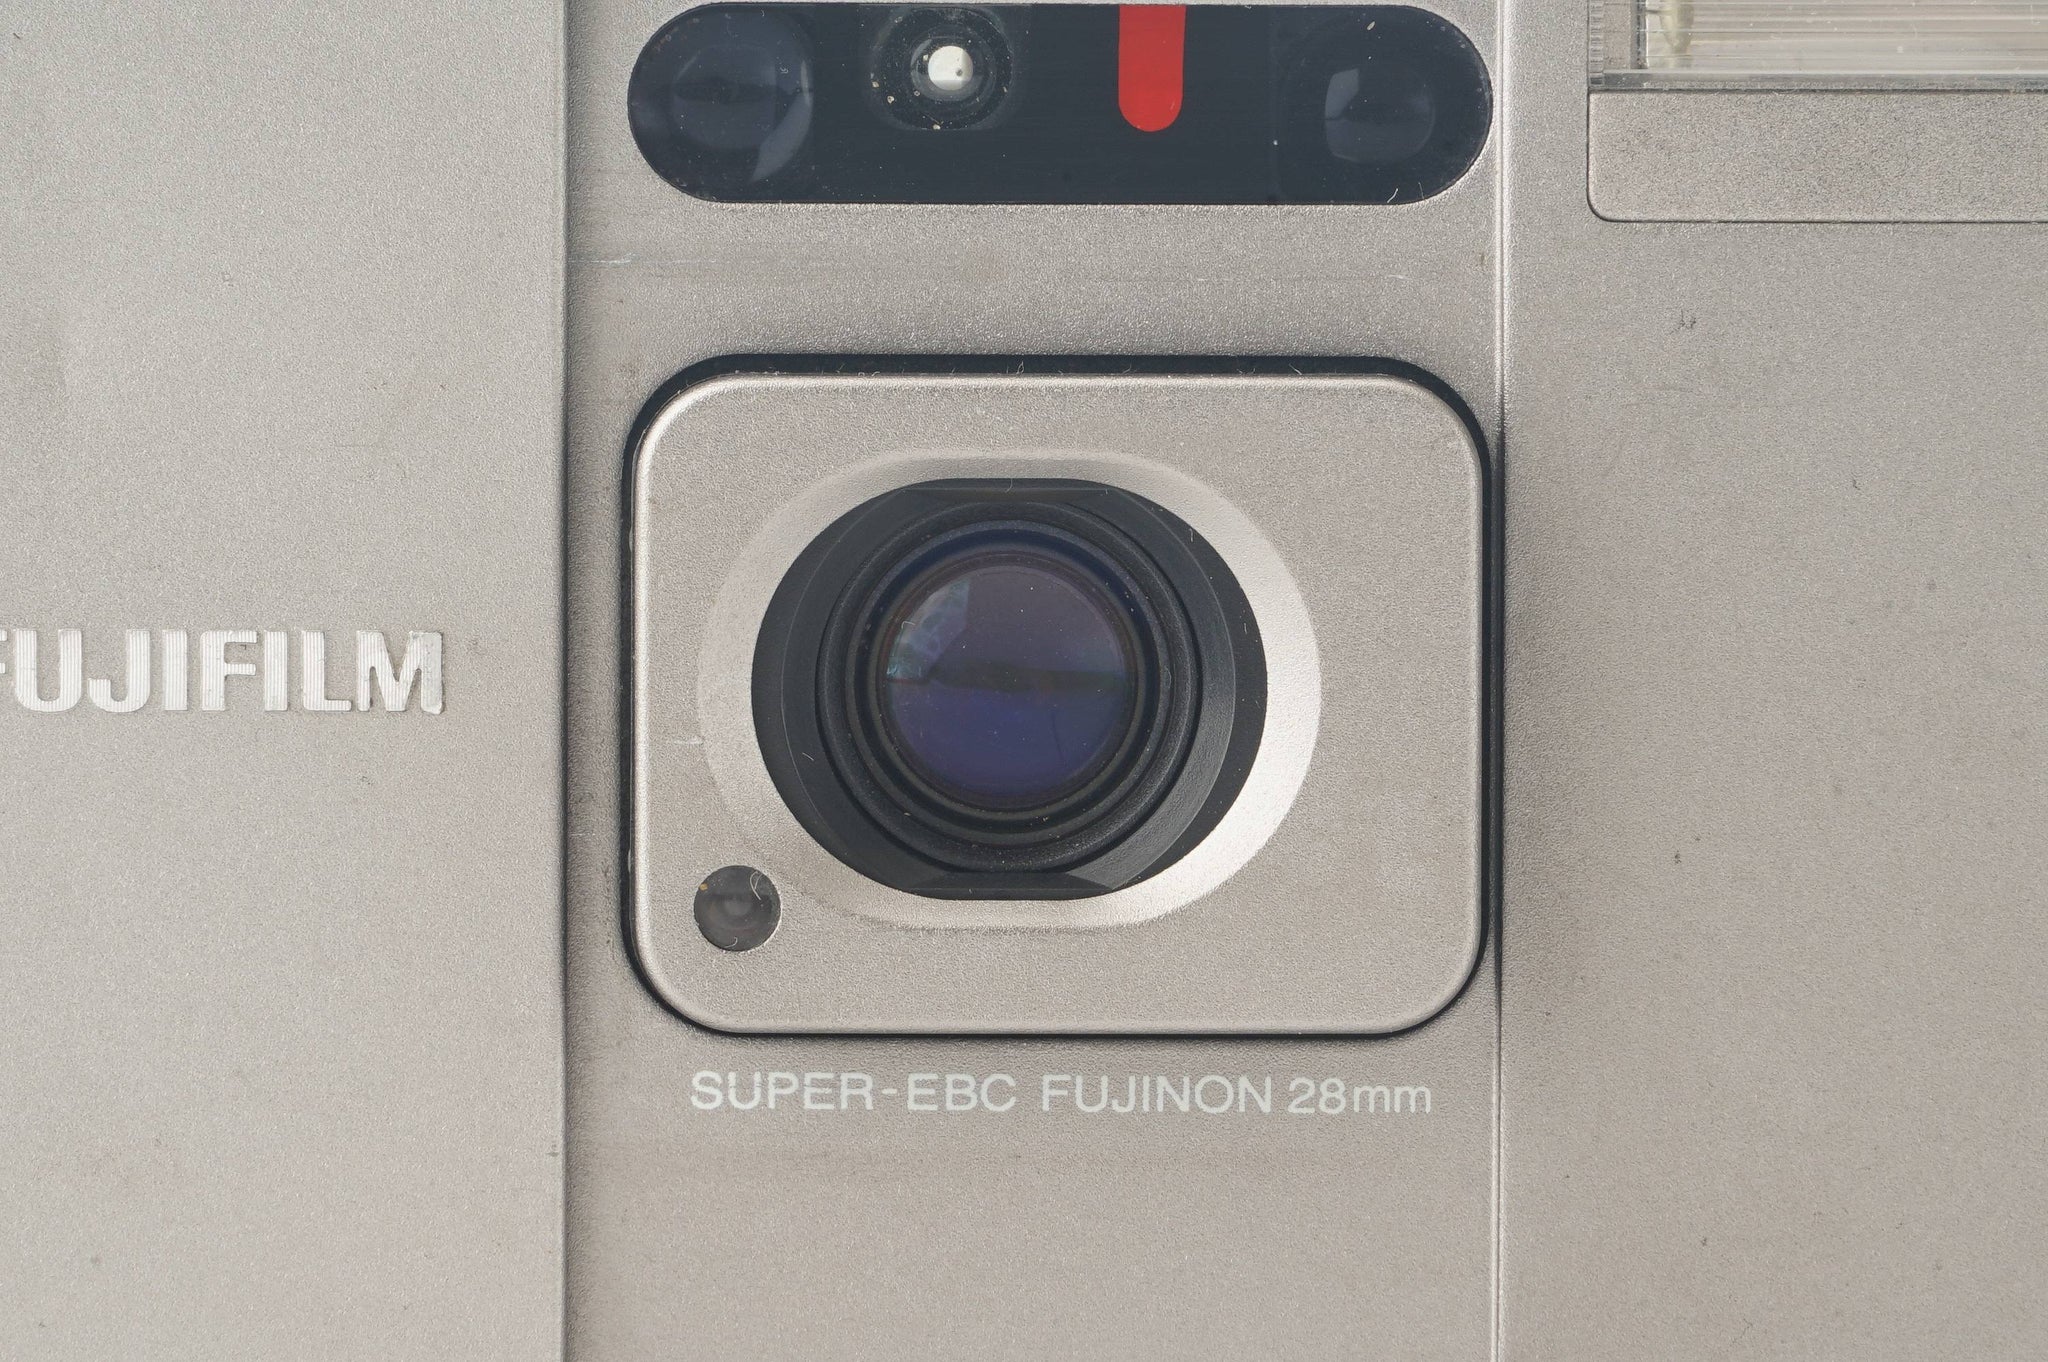 フジフィルム Fujifilm TIARA SUPER-EBC FUJINON